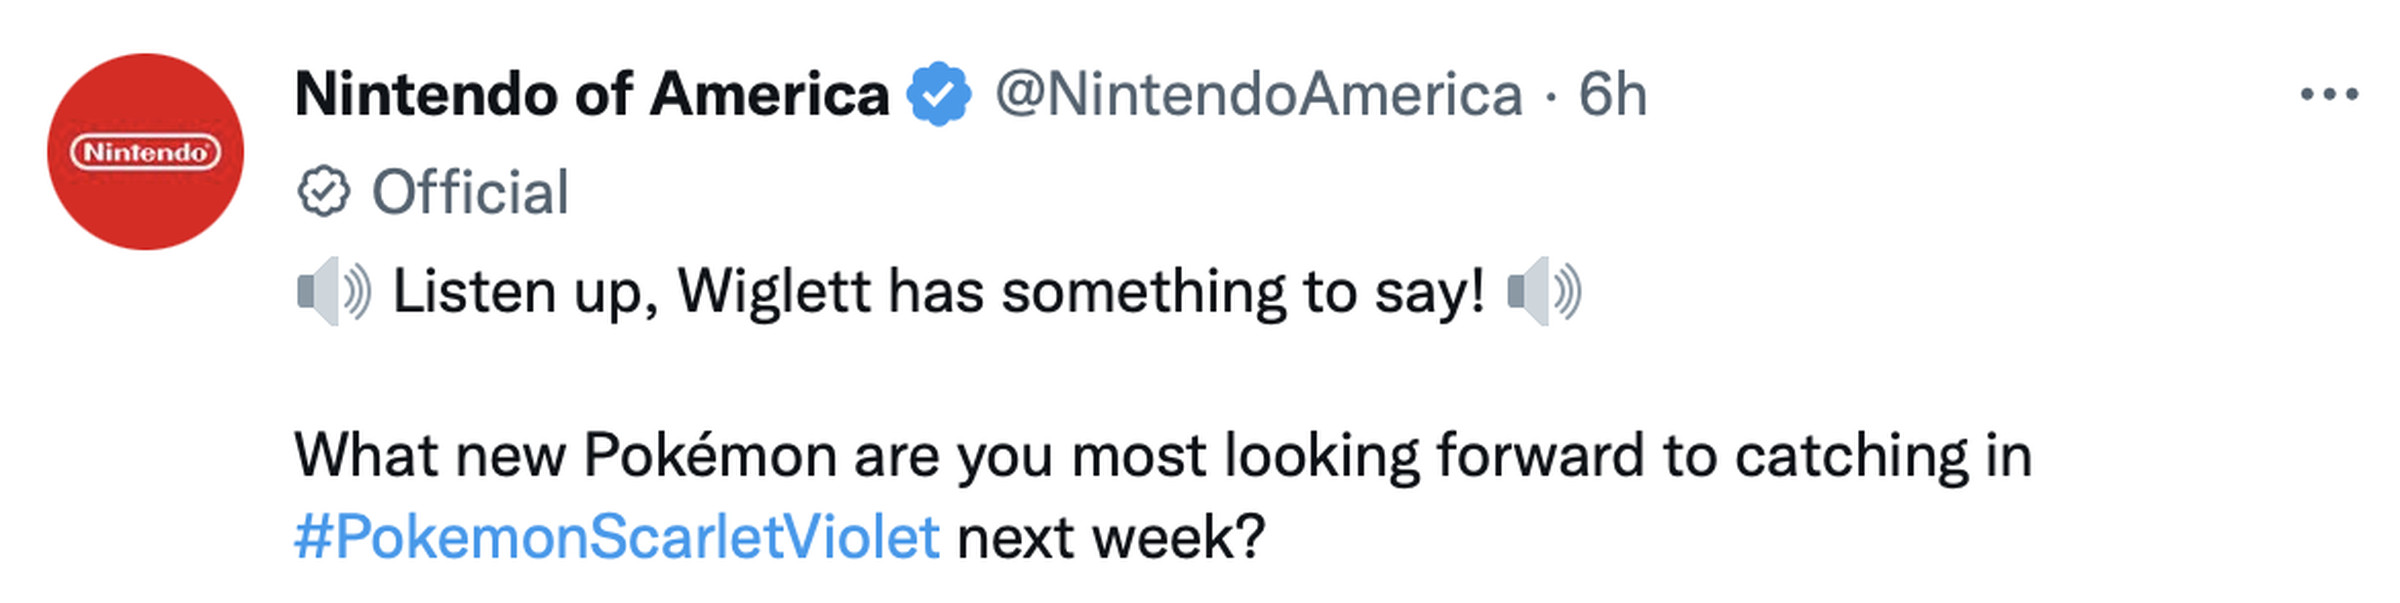 Hem mavi doğrulama onay işareti hem de gri "resmi" onay ve rozeti olan bir Nintendo tweet'inin ekran görüntüsü.